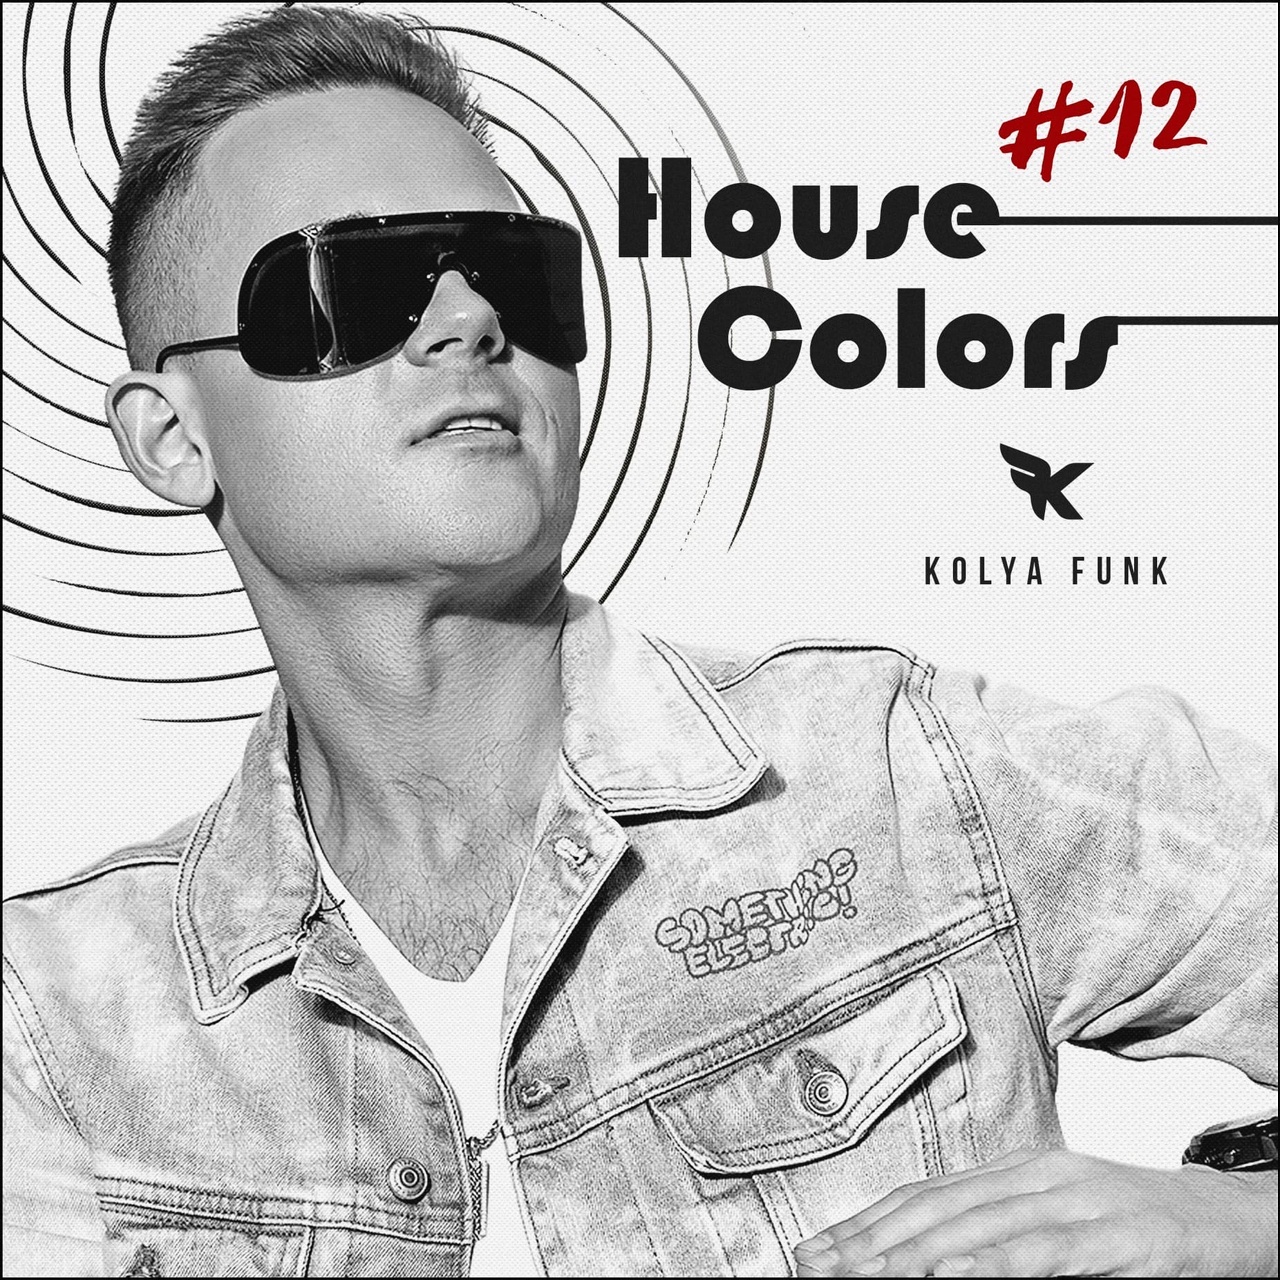 İndirmek Kolya Funk - House Colors #012